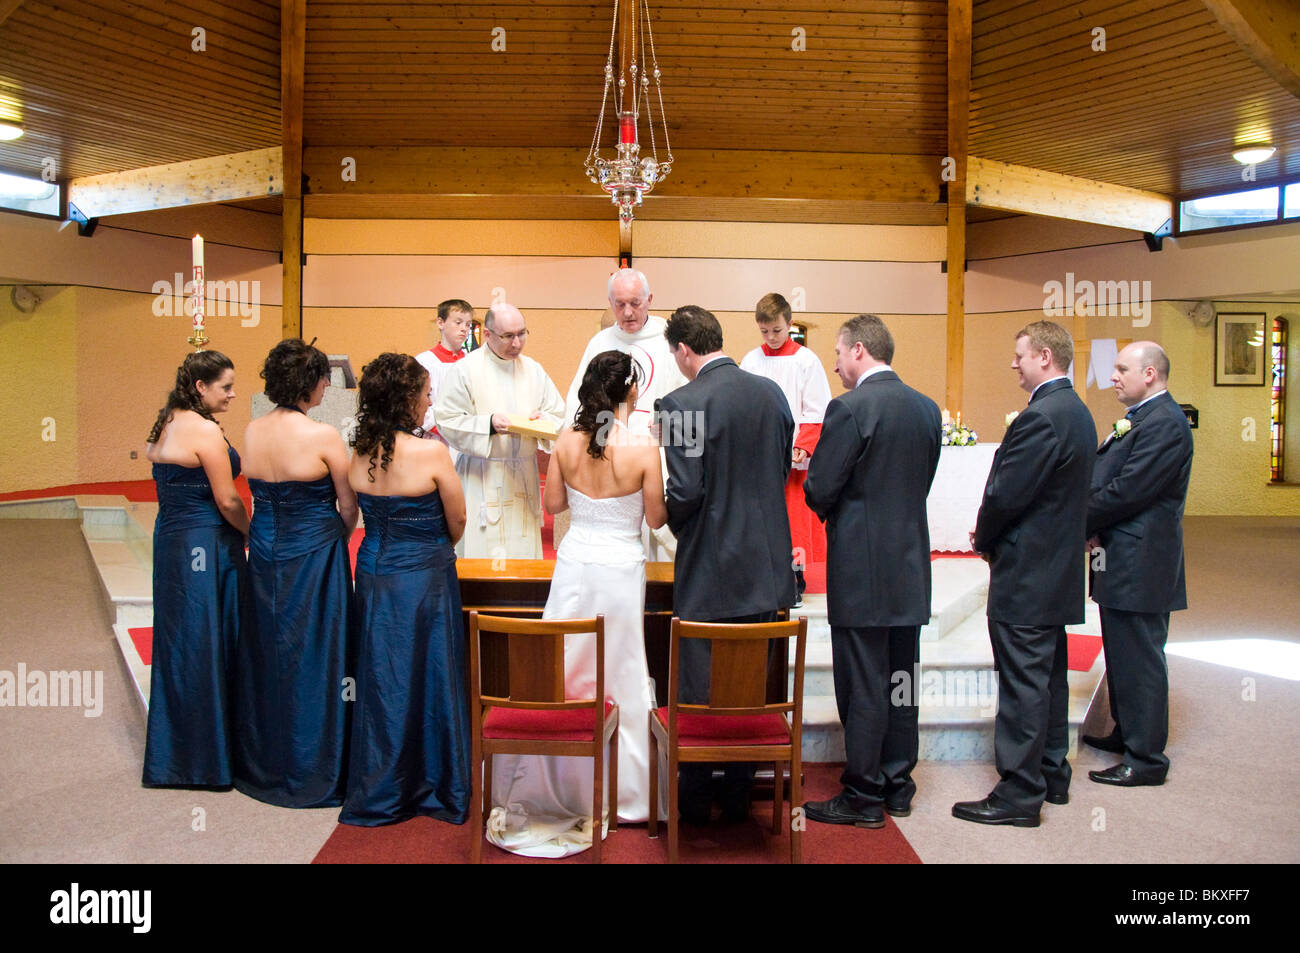 Cerimonia di matrimonio in corso in una chiesa moderna Foto Stock